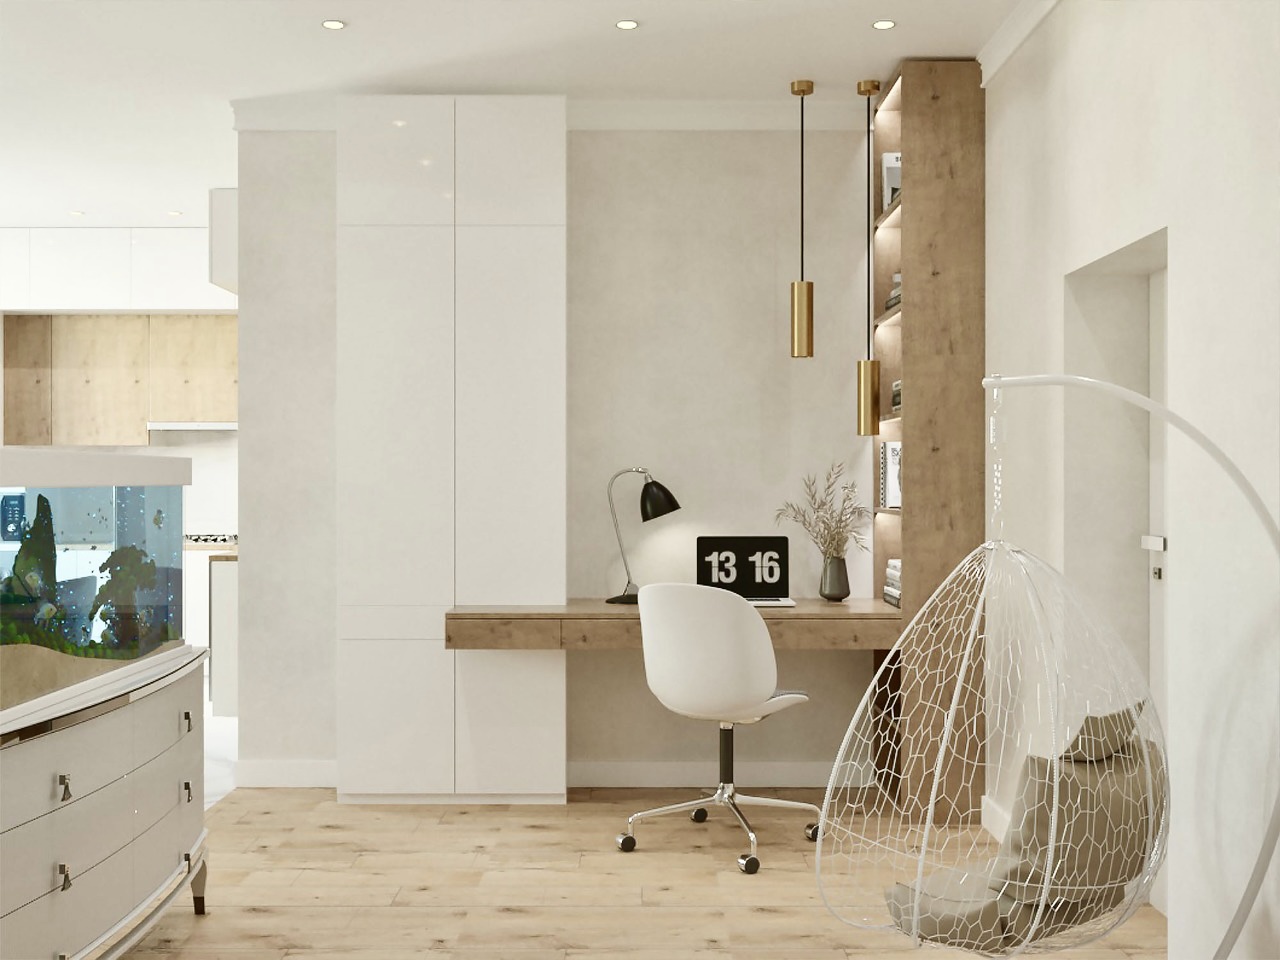 Дизайн интерьера квартир и дизайн проектирование домов - фотография